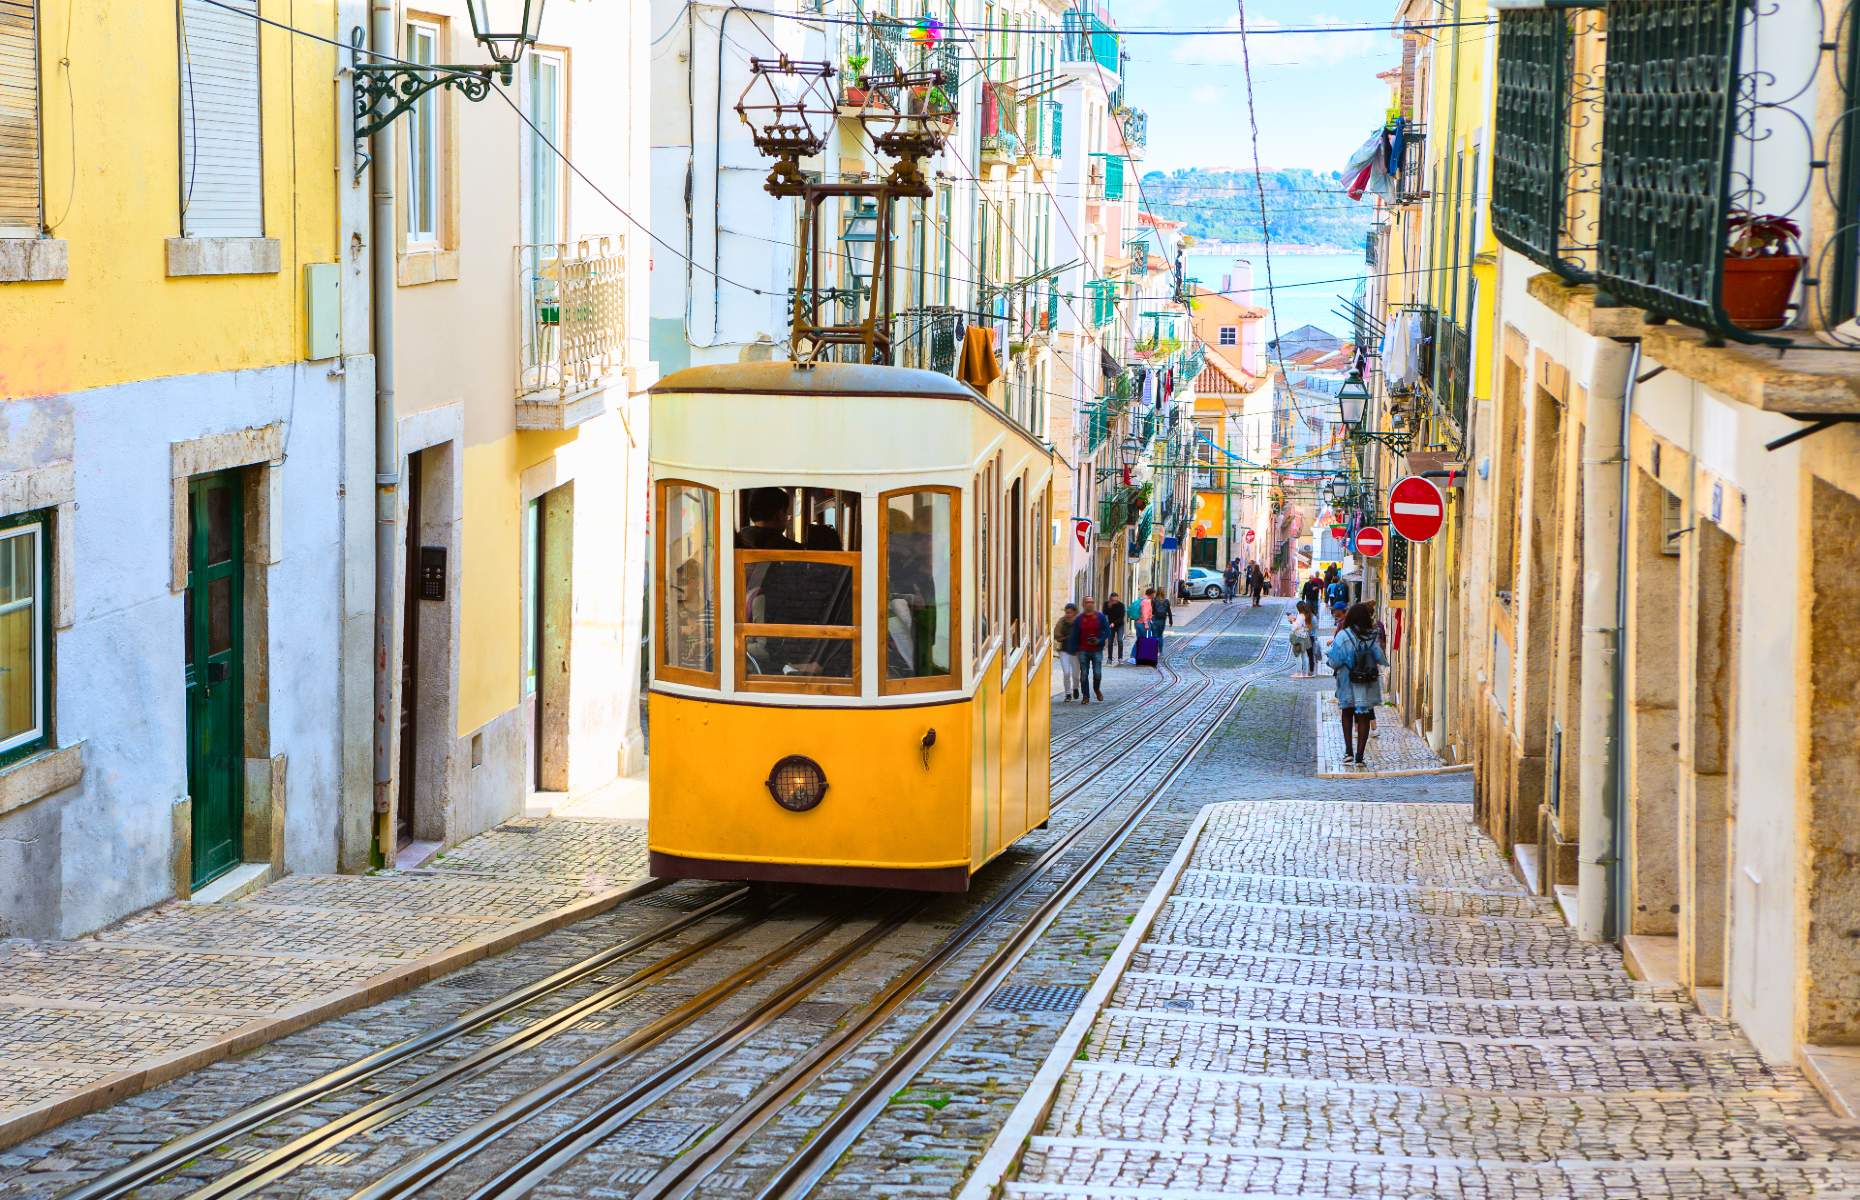 Lisbon in Portugal (Image: Nella/Shutterstock)